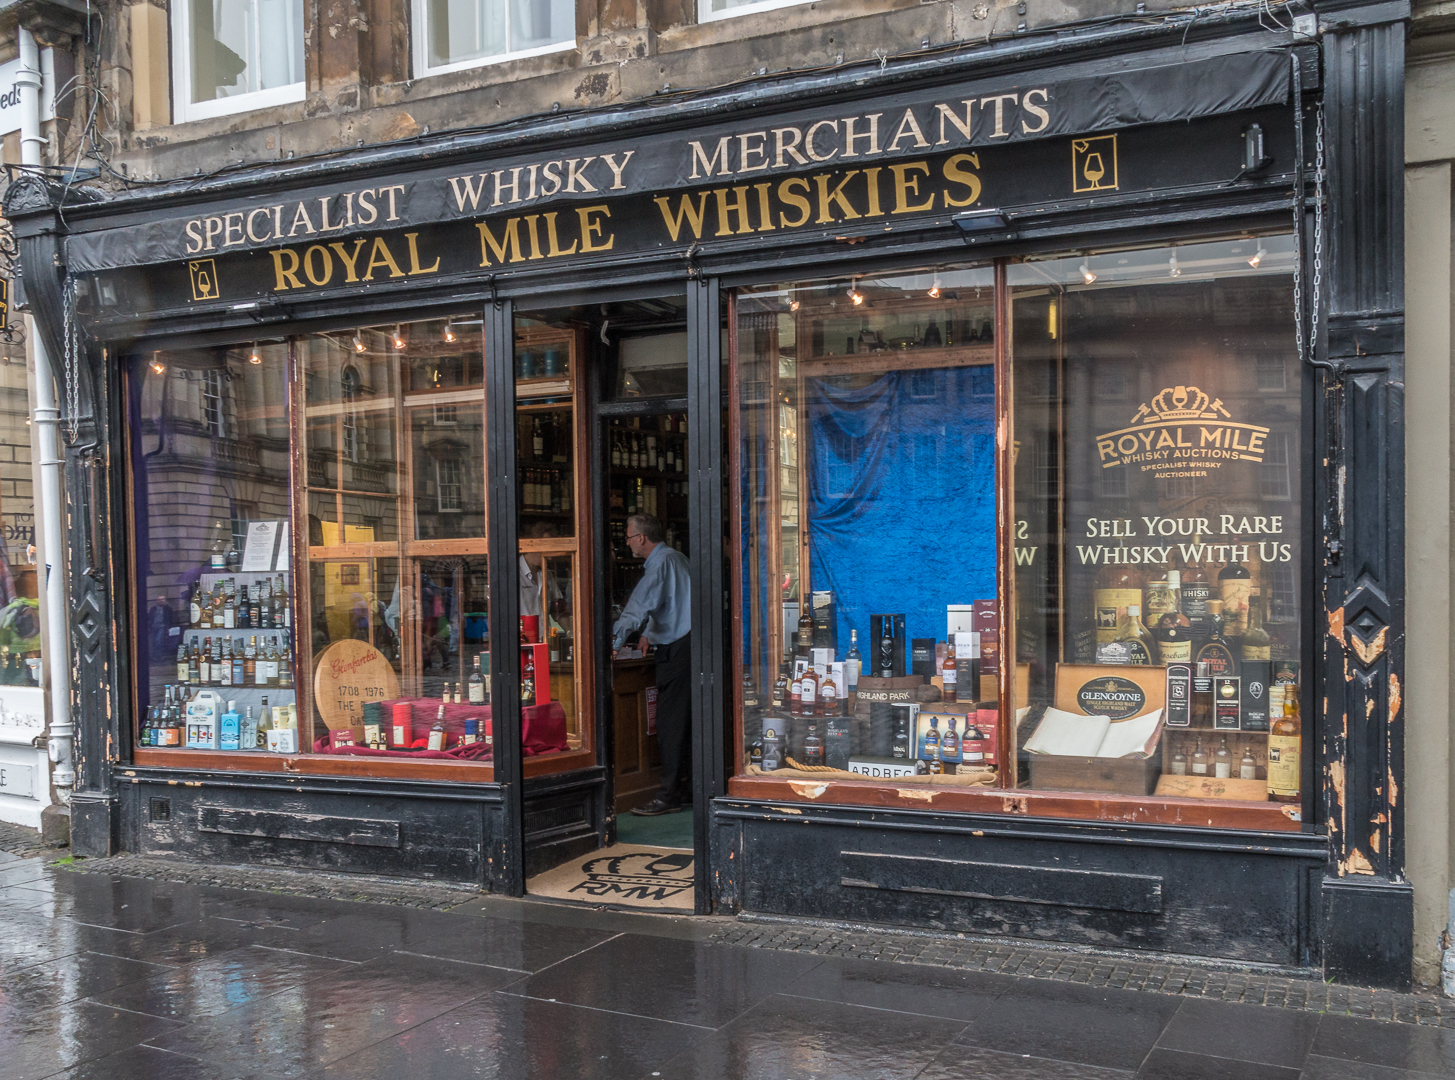 Royal Mile Whiskies